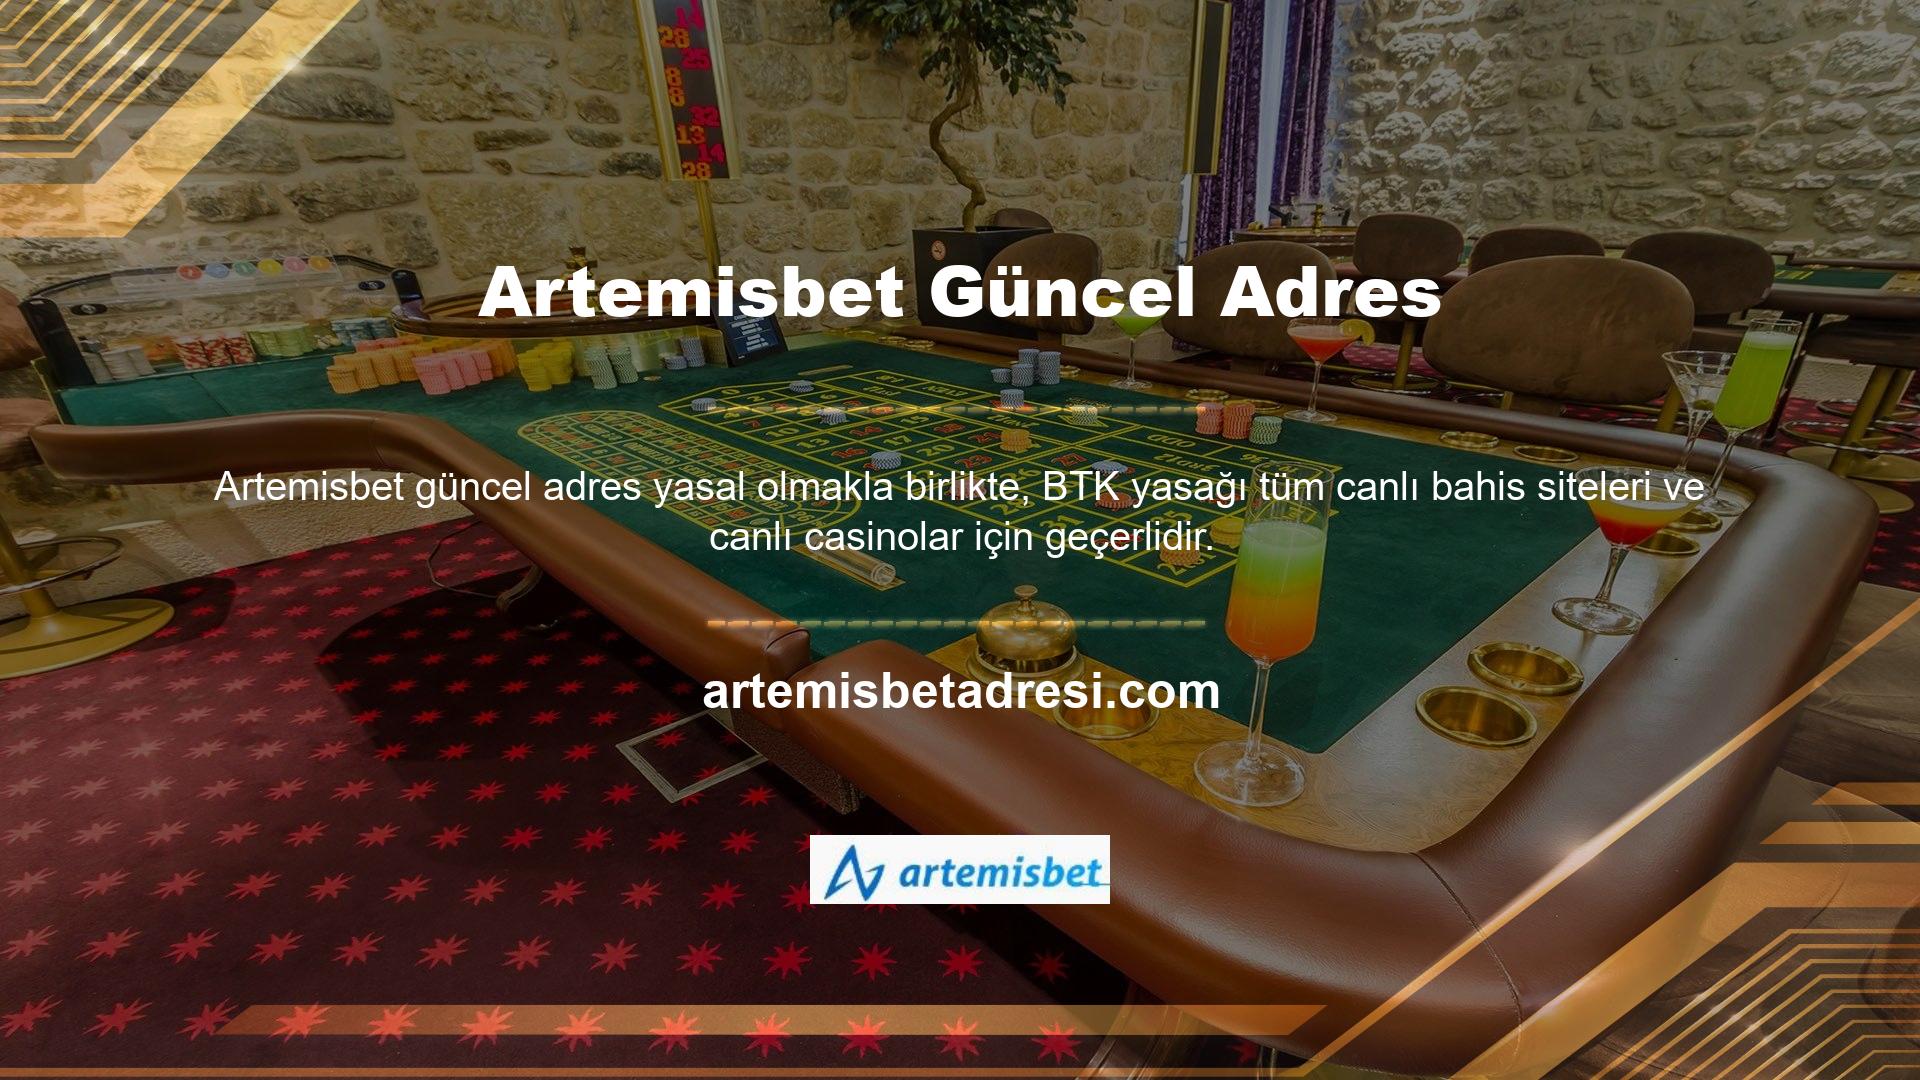 Artemisbet adres sayfası giriş adresini ilk günden güncelleyerek bu sorunu çözmektedir